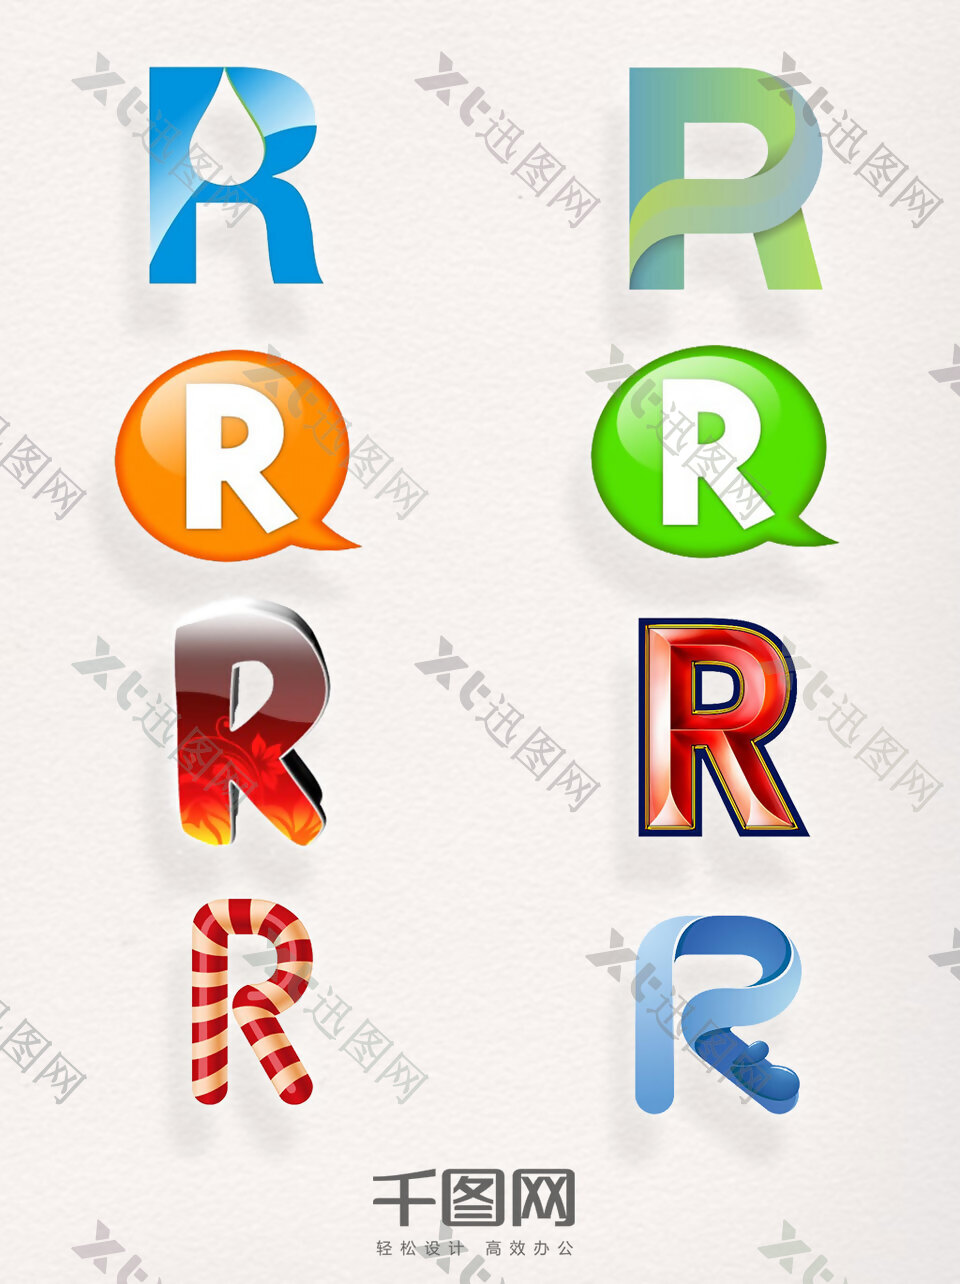 创意商标R元素艺术字母装饰素材图案集合